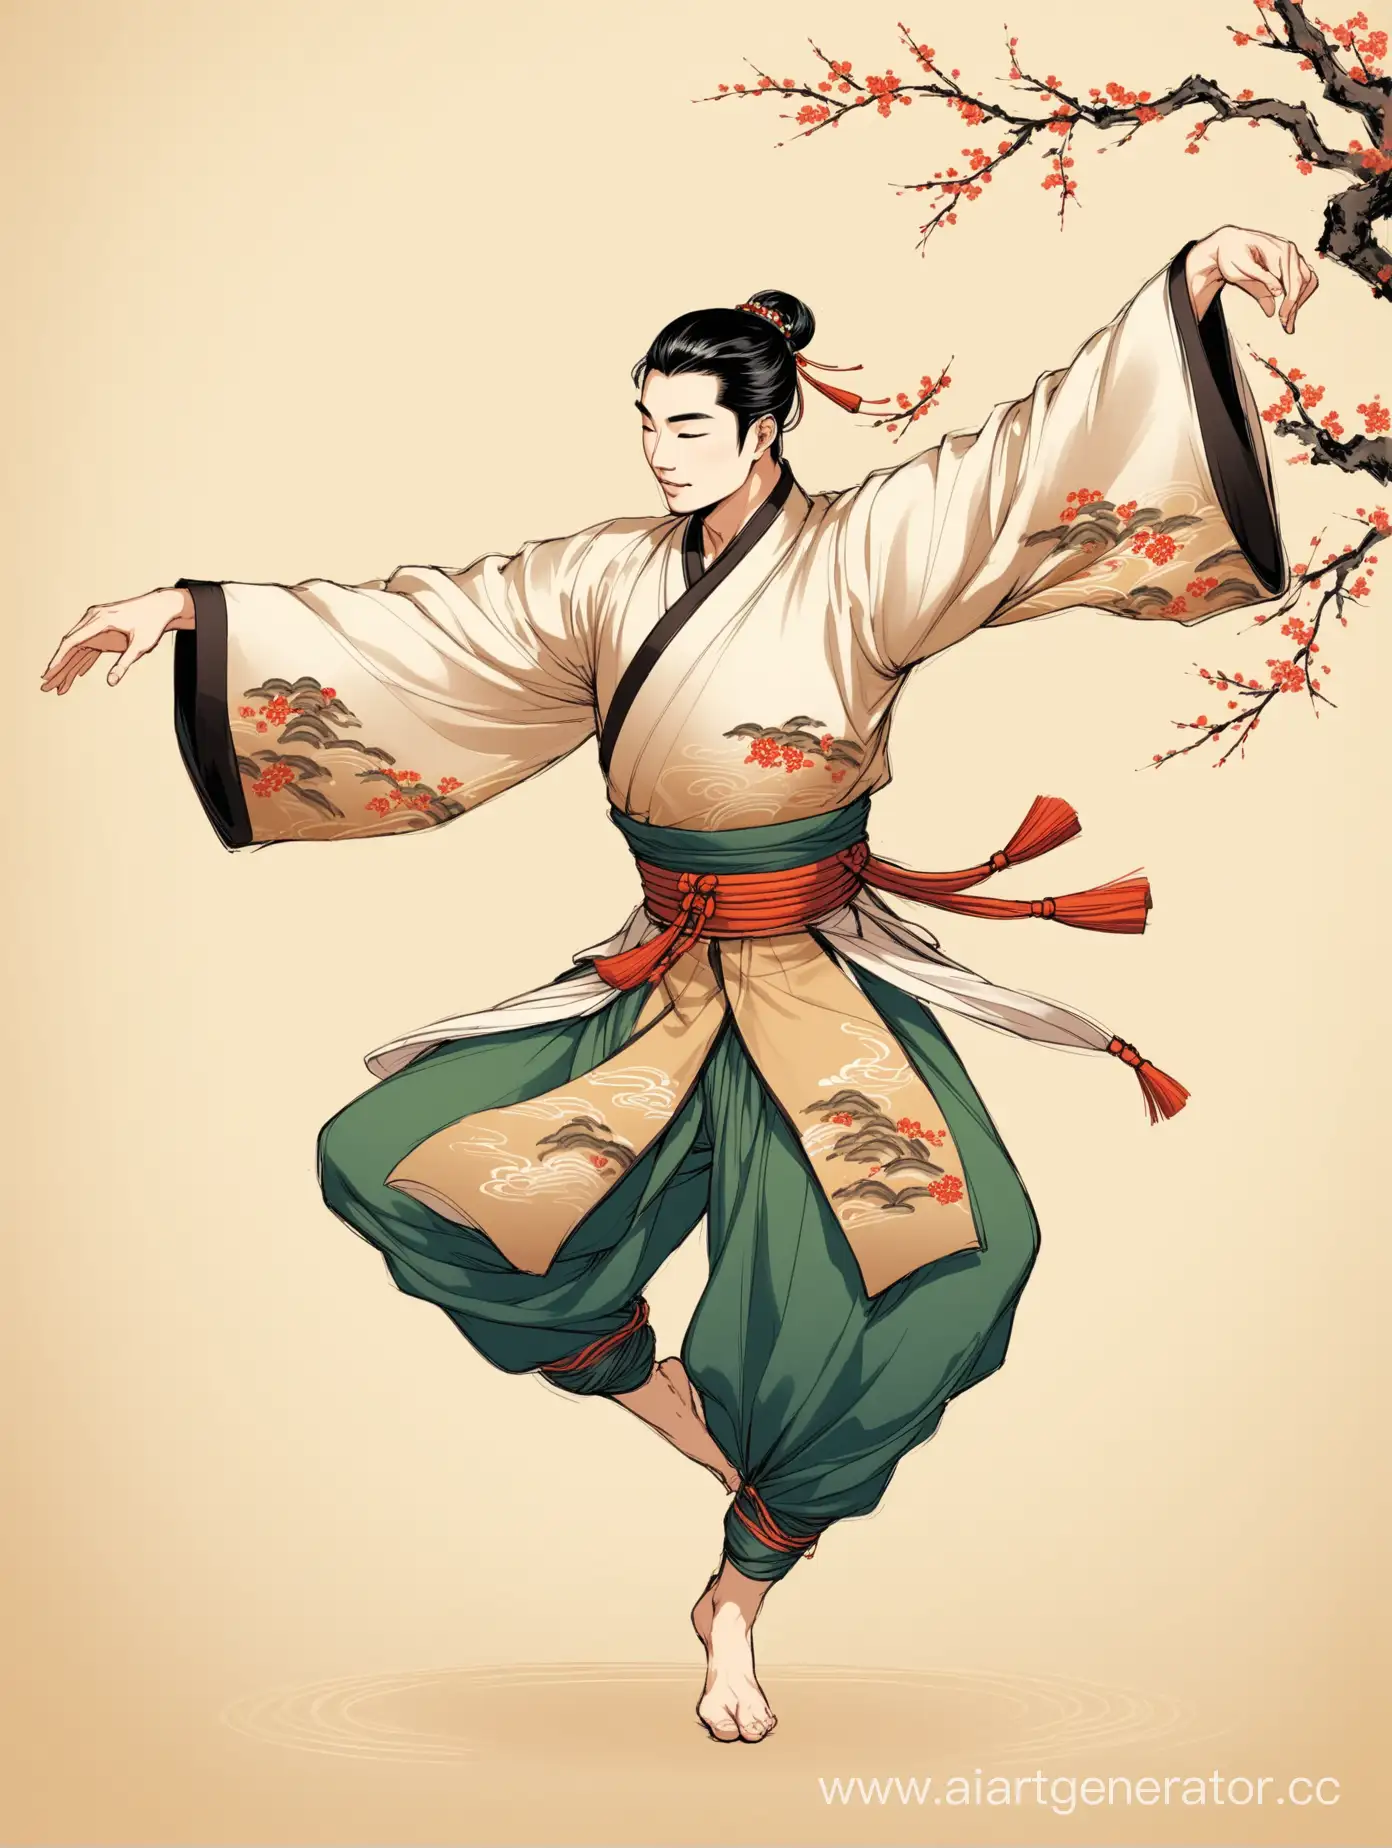 Красивый азиатский мужчина танцует, в стиле традиционной азиатской живописи